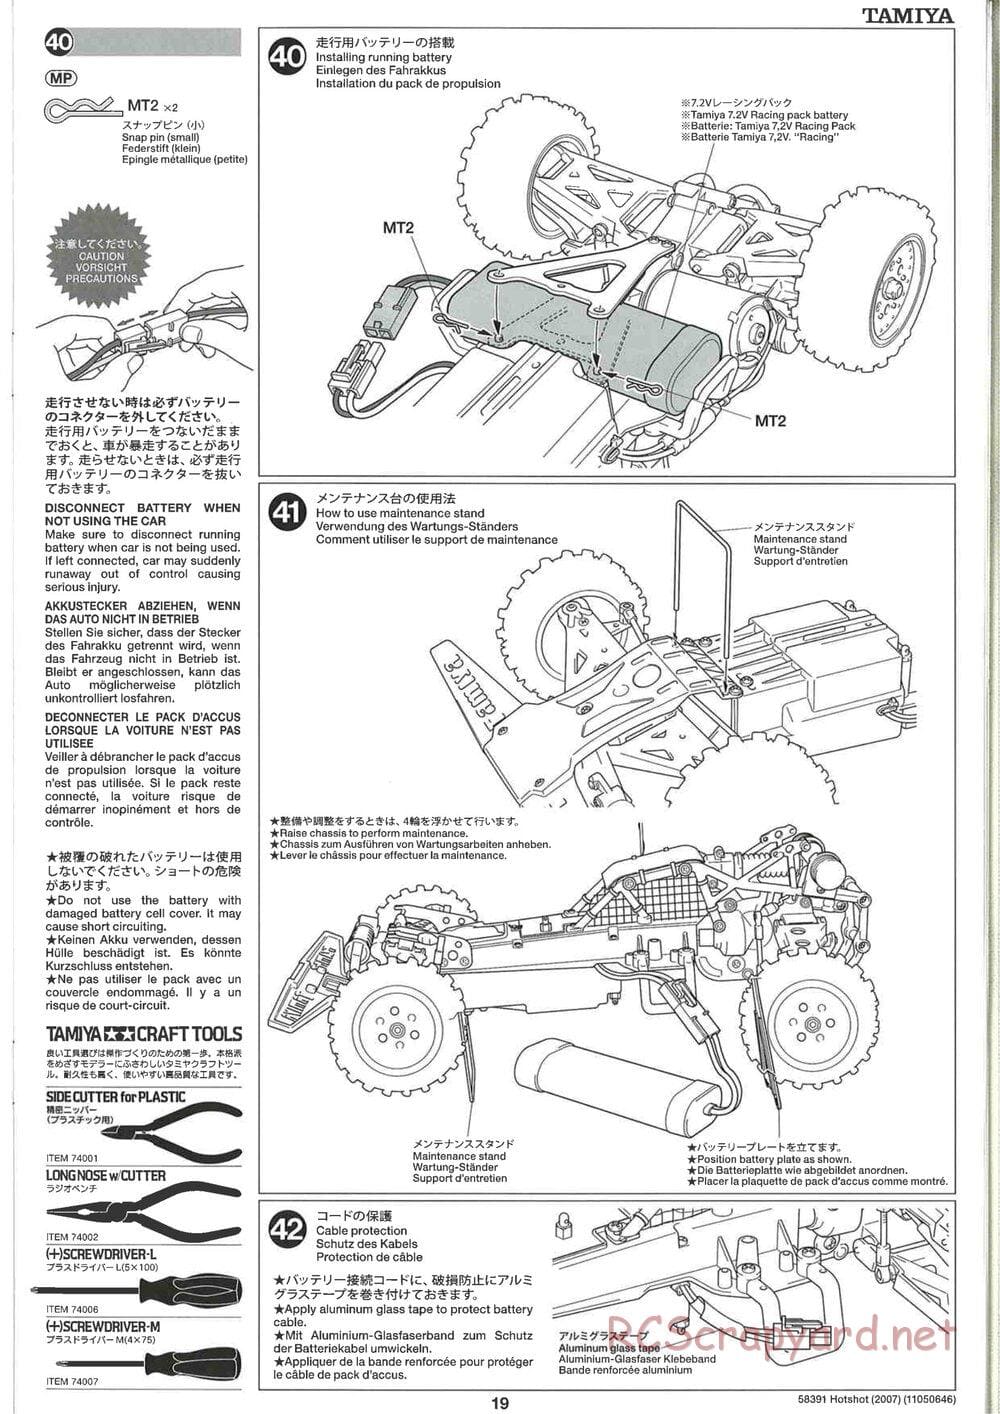 Tamiya - Hotshot - 2007 - HS Chassis - Manual - Page 19